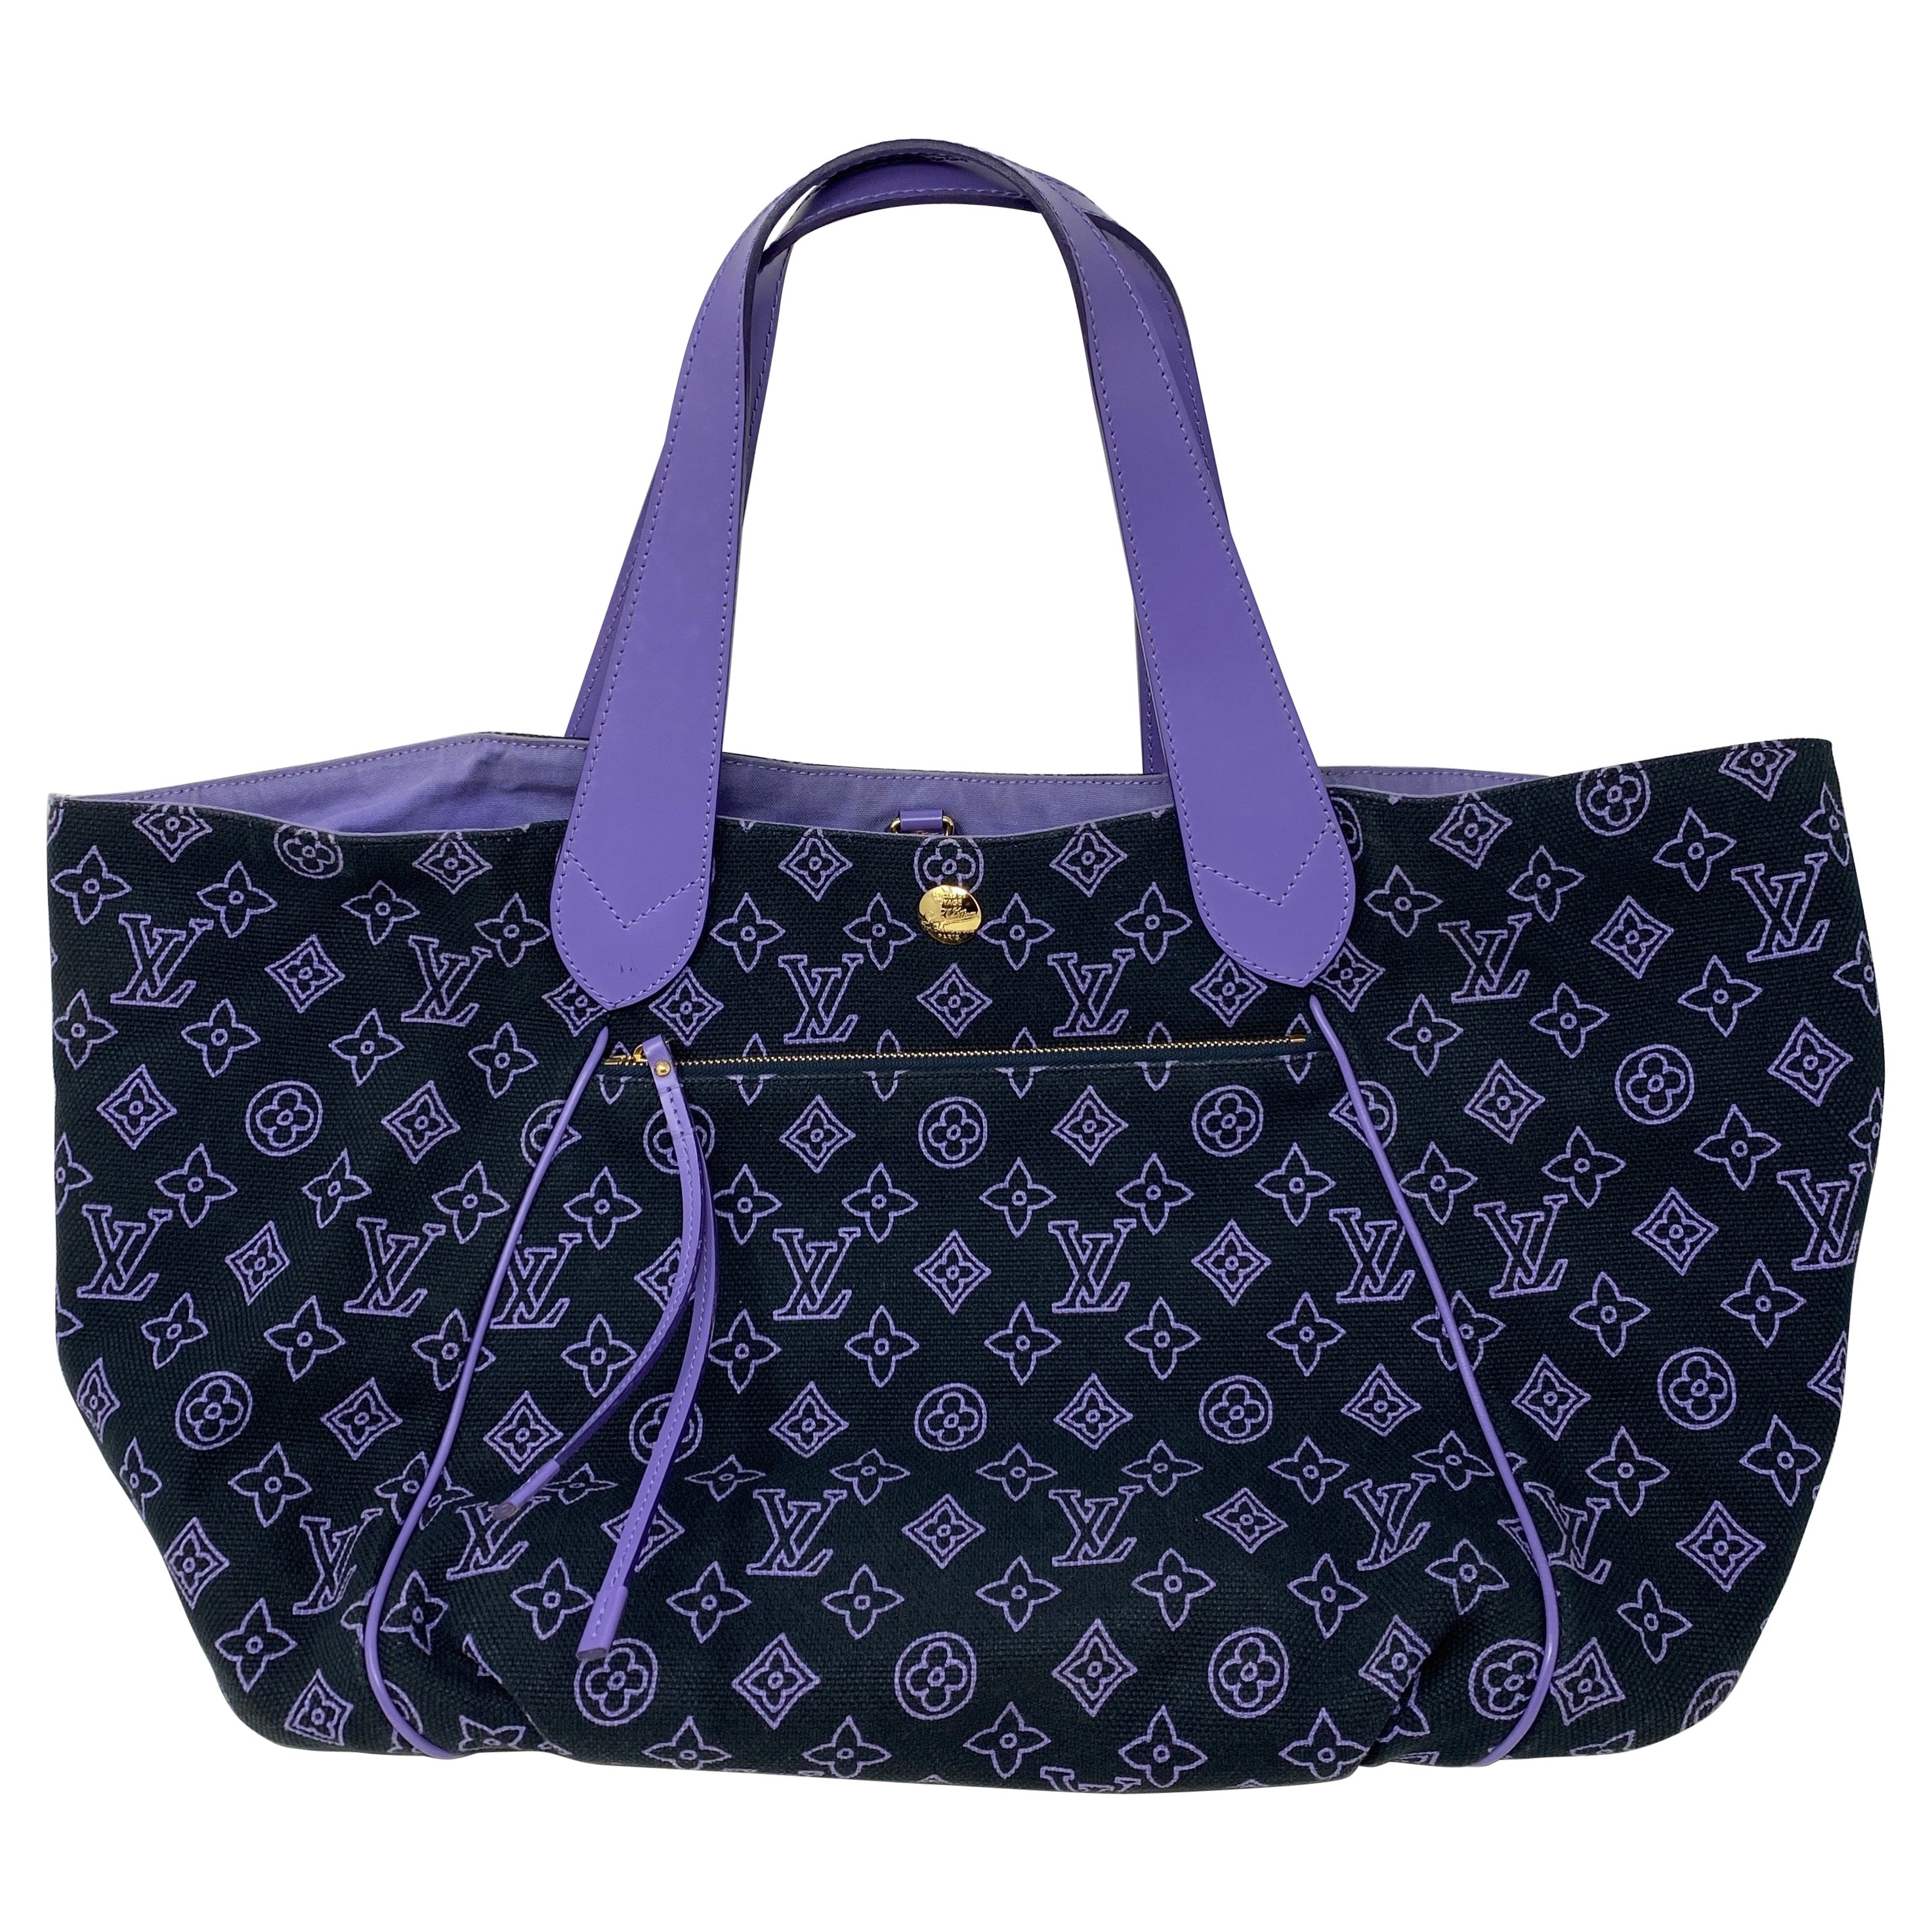 Louis Vuitton Light Blue Purse - 64 For Sale on 1stDibs  light blue louis  vuitton bag, baby blue lv bag, lv bag light blue